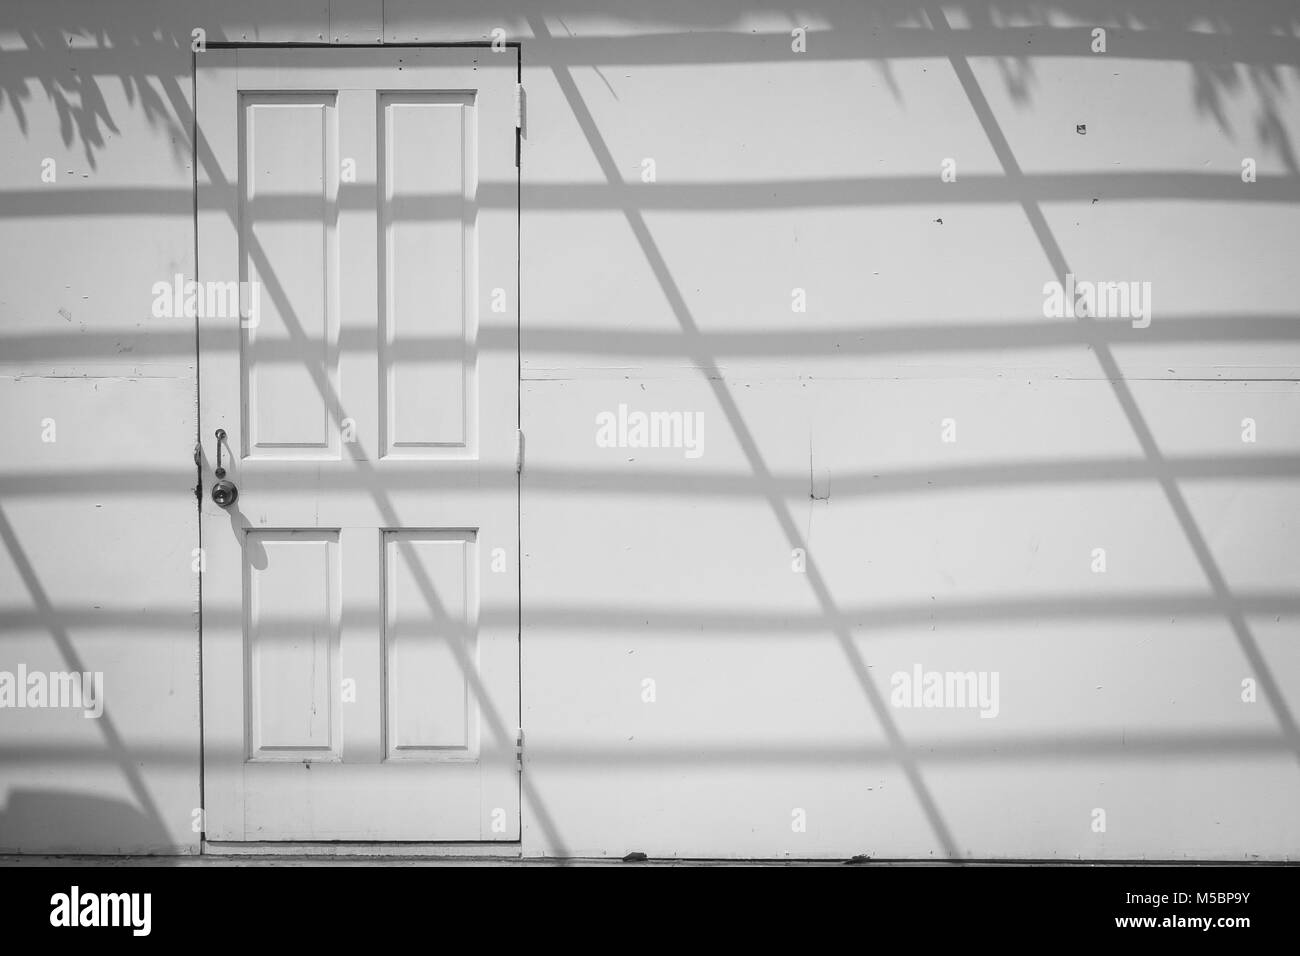 Résumé de droit de vue avant sur porte en bois blanc blanc vieux mur de béton avec l'ombrage de l'ombre sur le mur. Banque D'Images